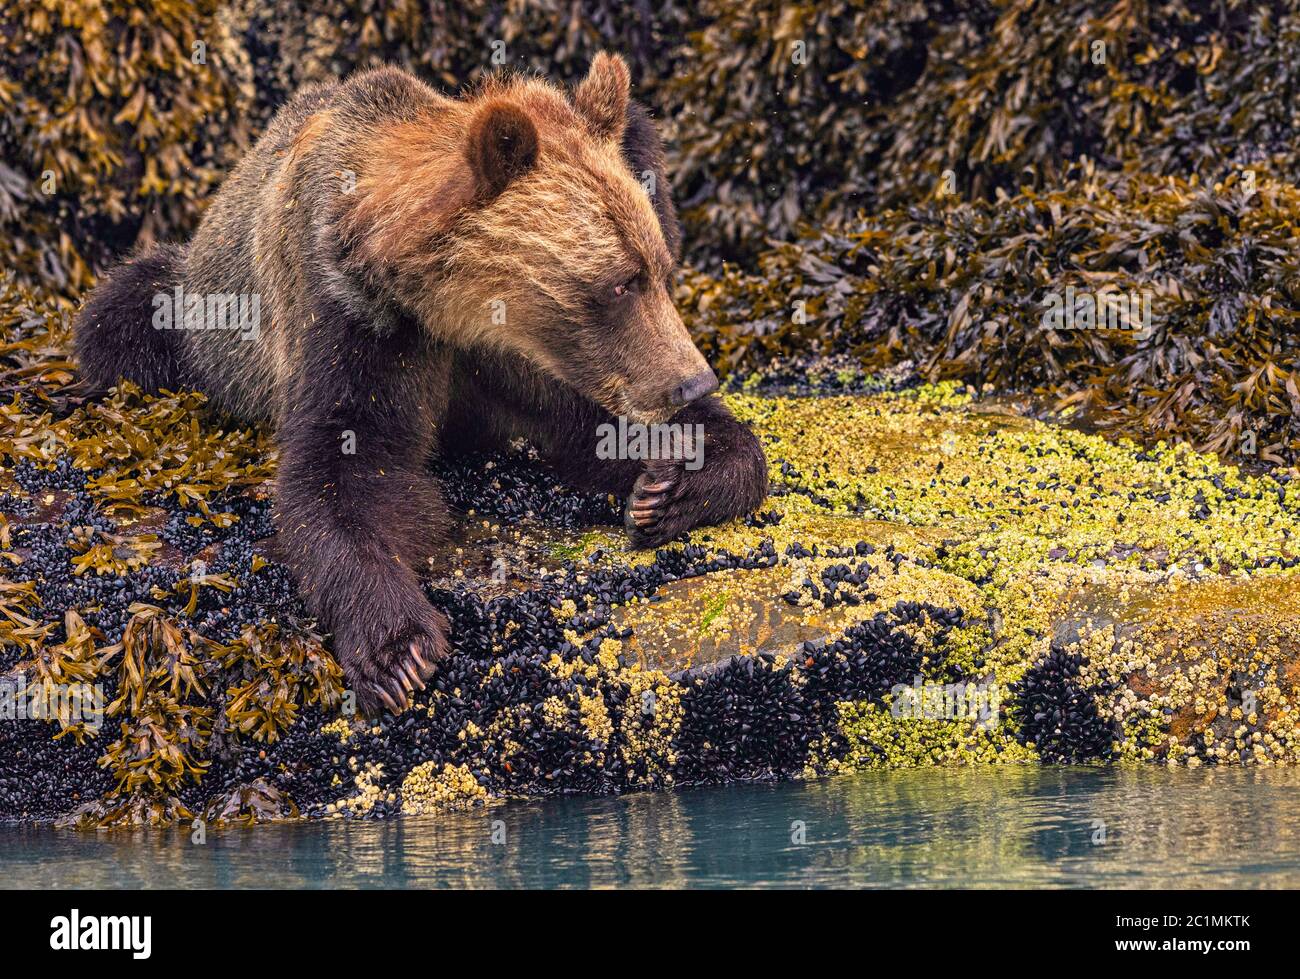 Bei Ebbe ruht ein Grizzlybär auf Muscheln in Knight Inlet, First Nations Territory, British Columbia, Kanada. Stockfoto